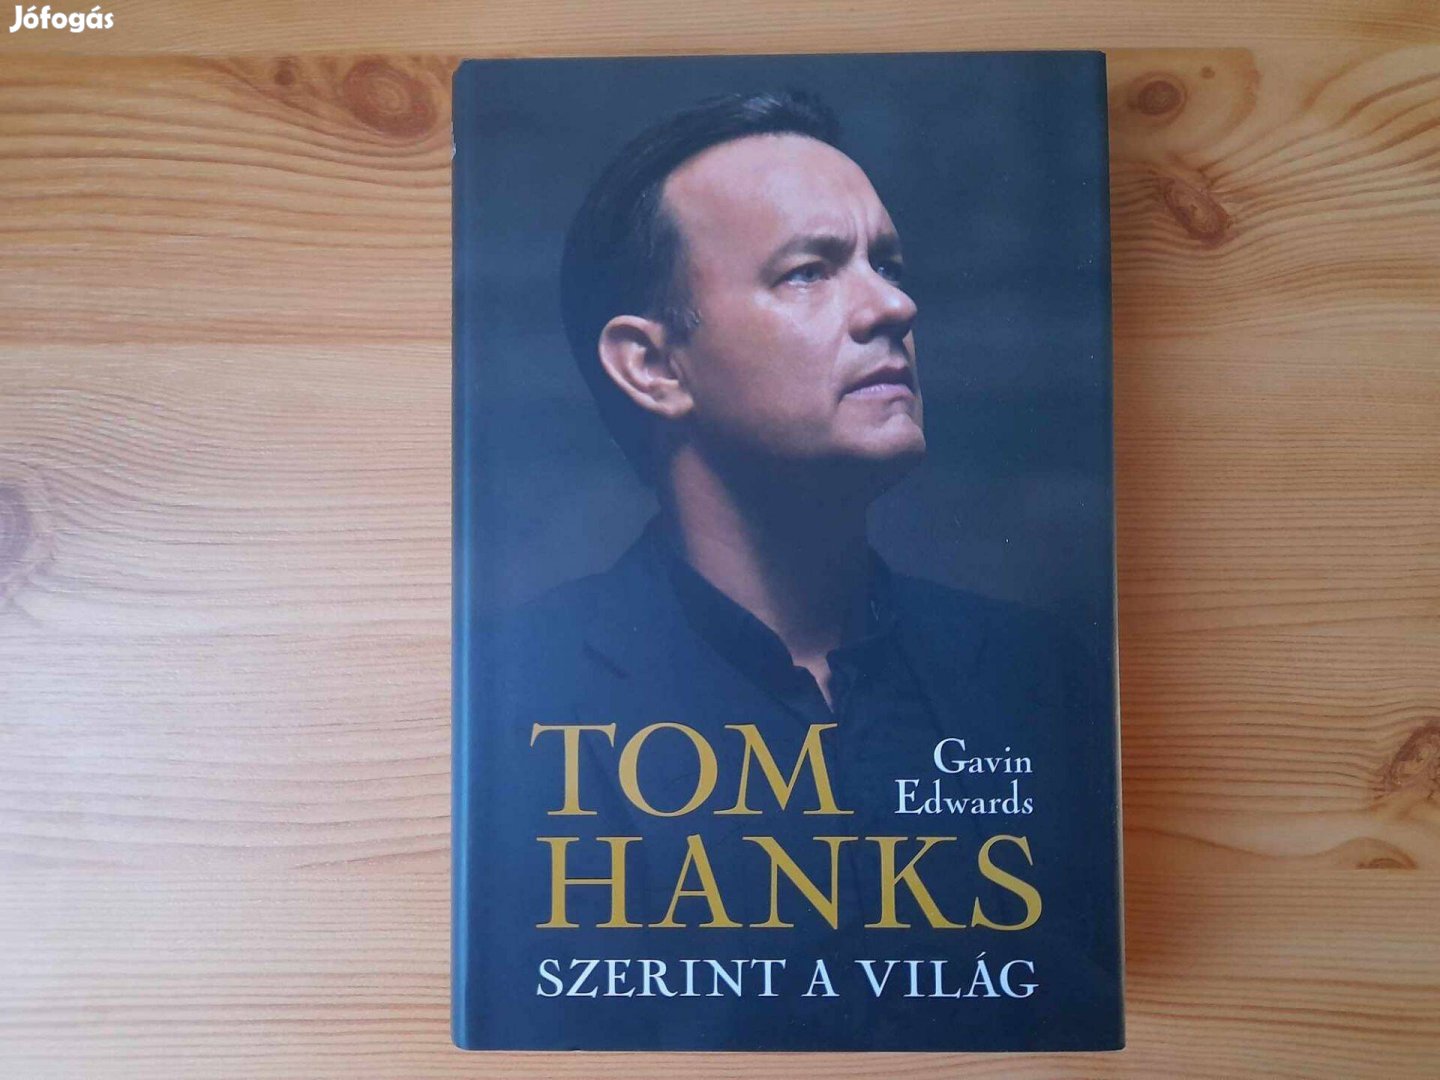 Gavin Edwards: Tom Hanks szerint a világ